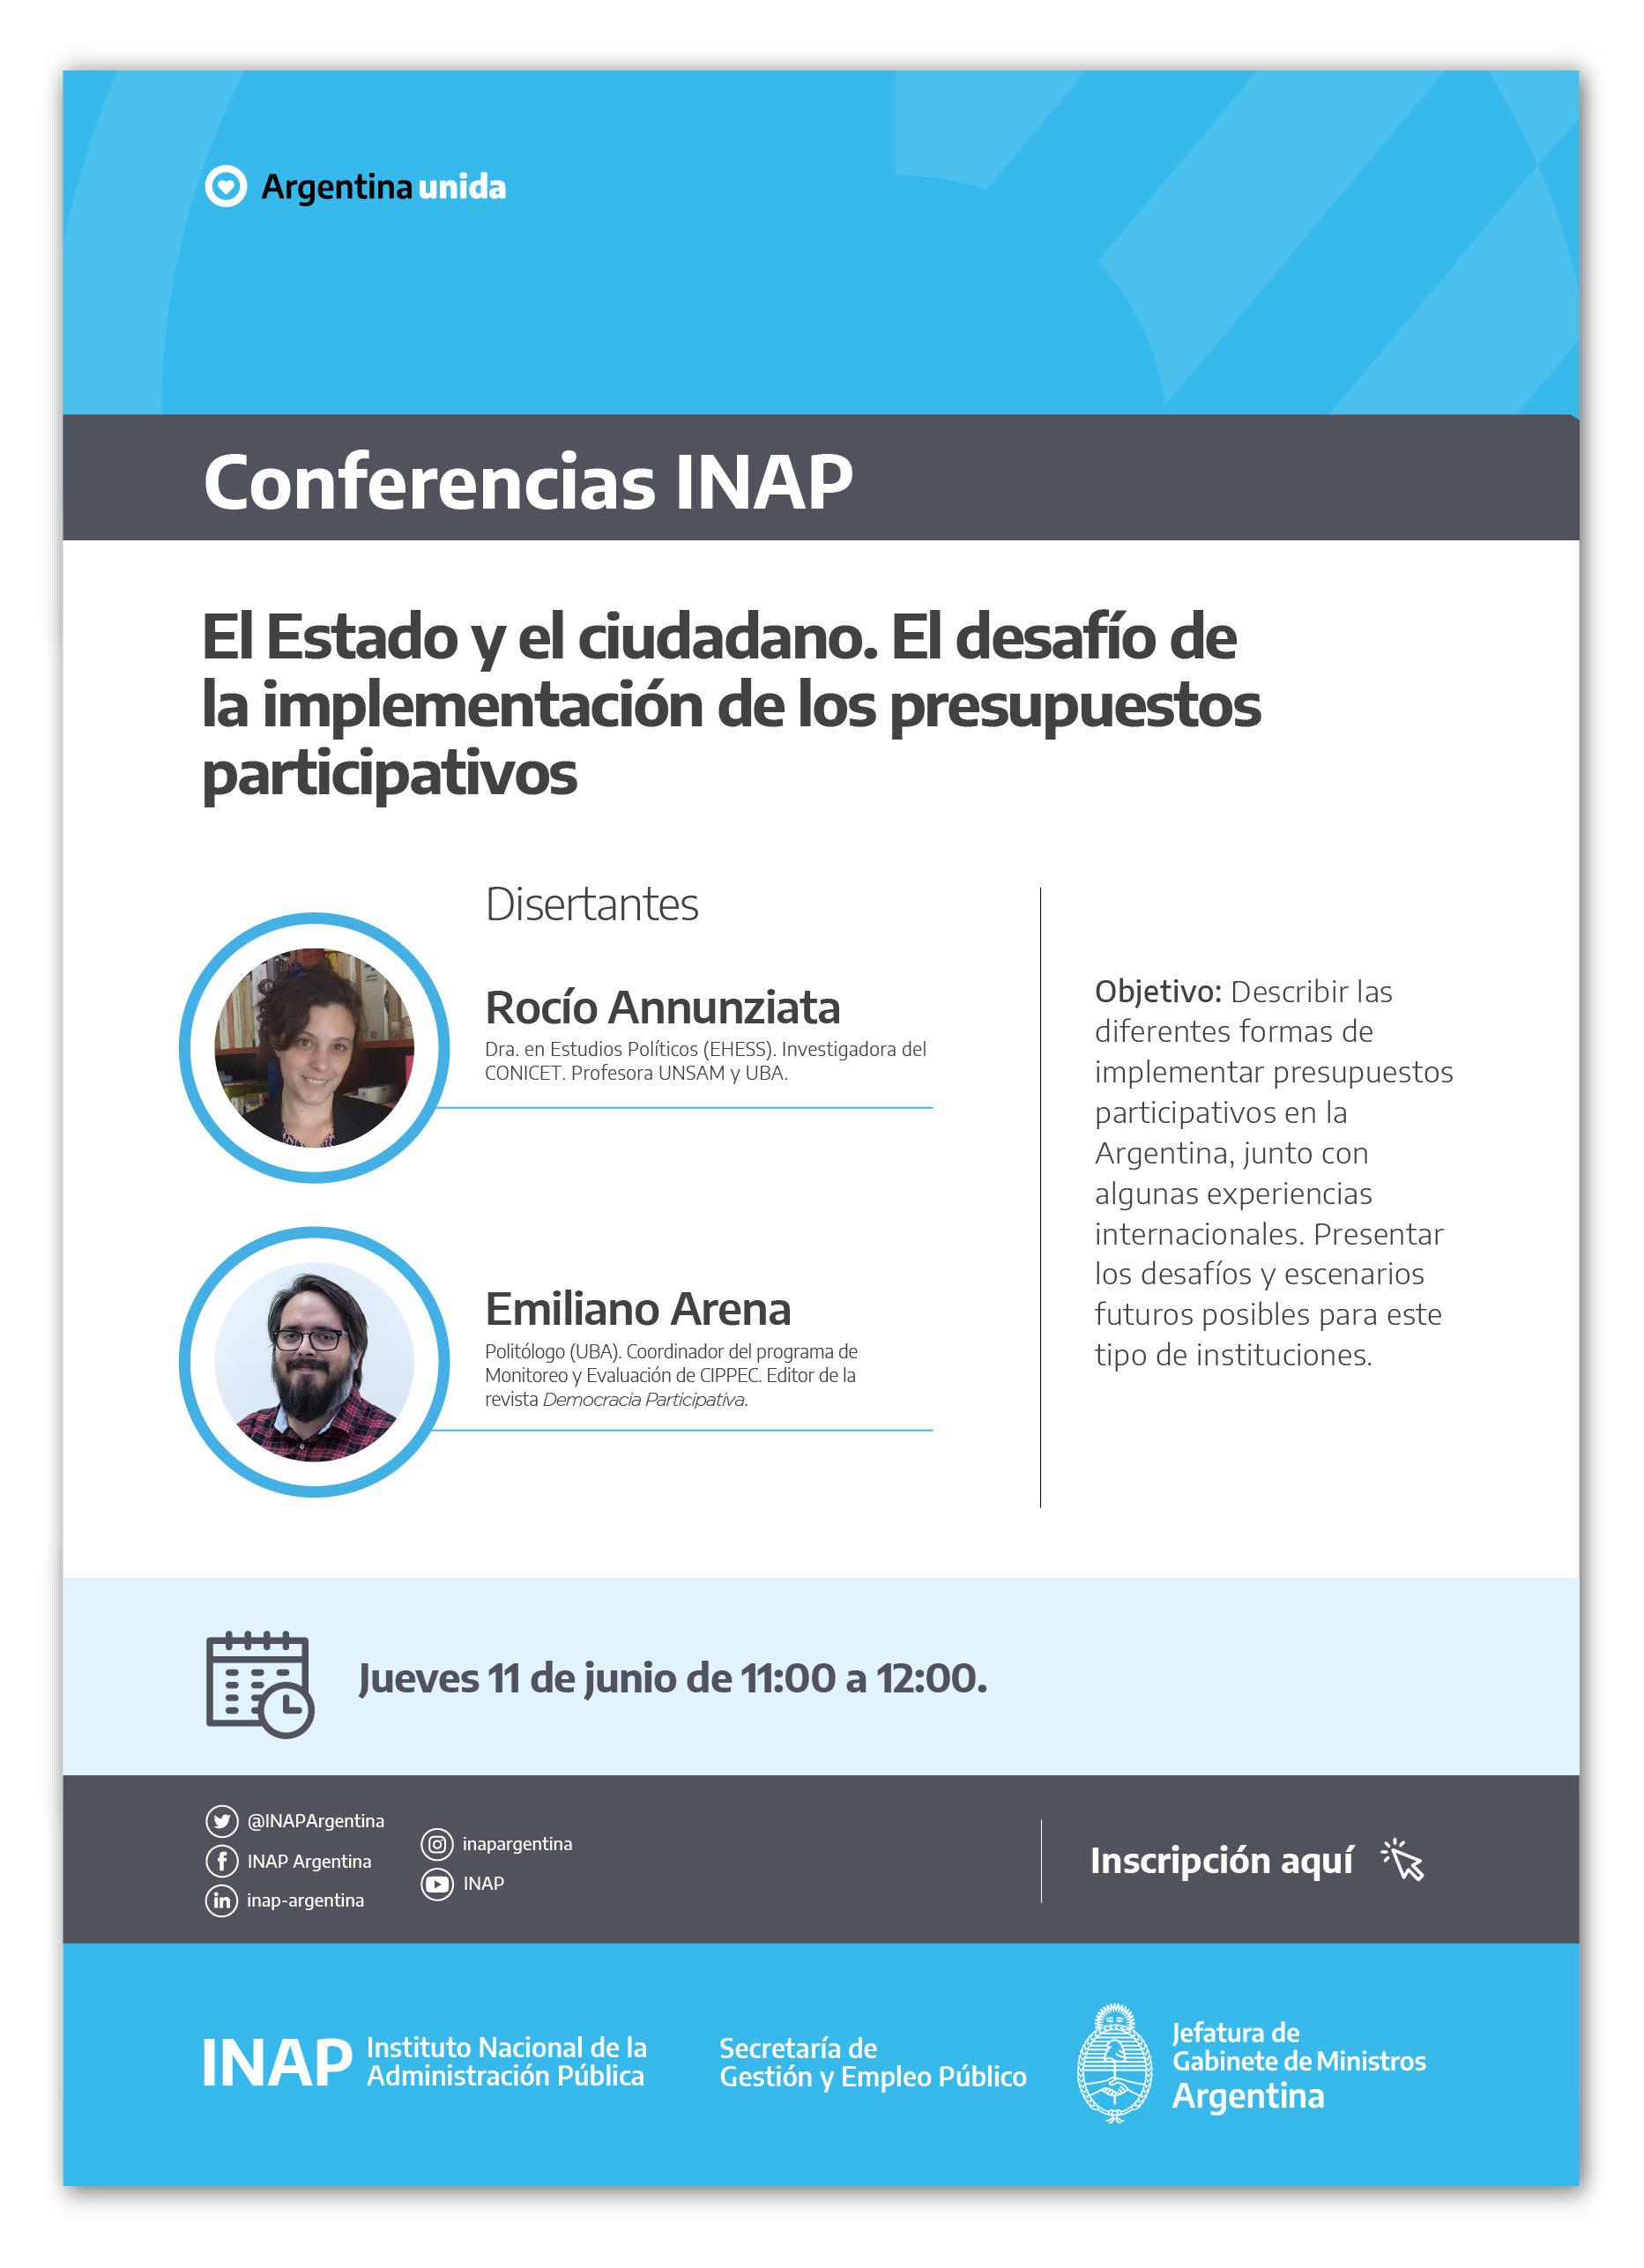 Conferencia INAP 11 de junio 2020